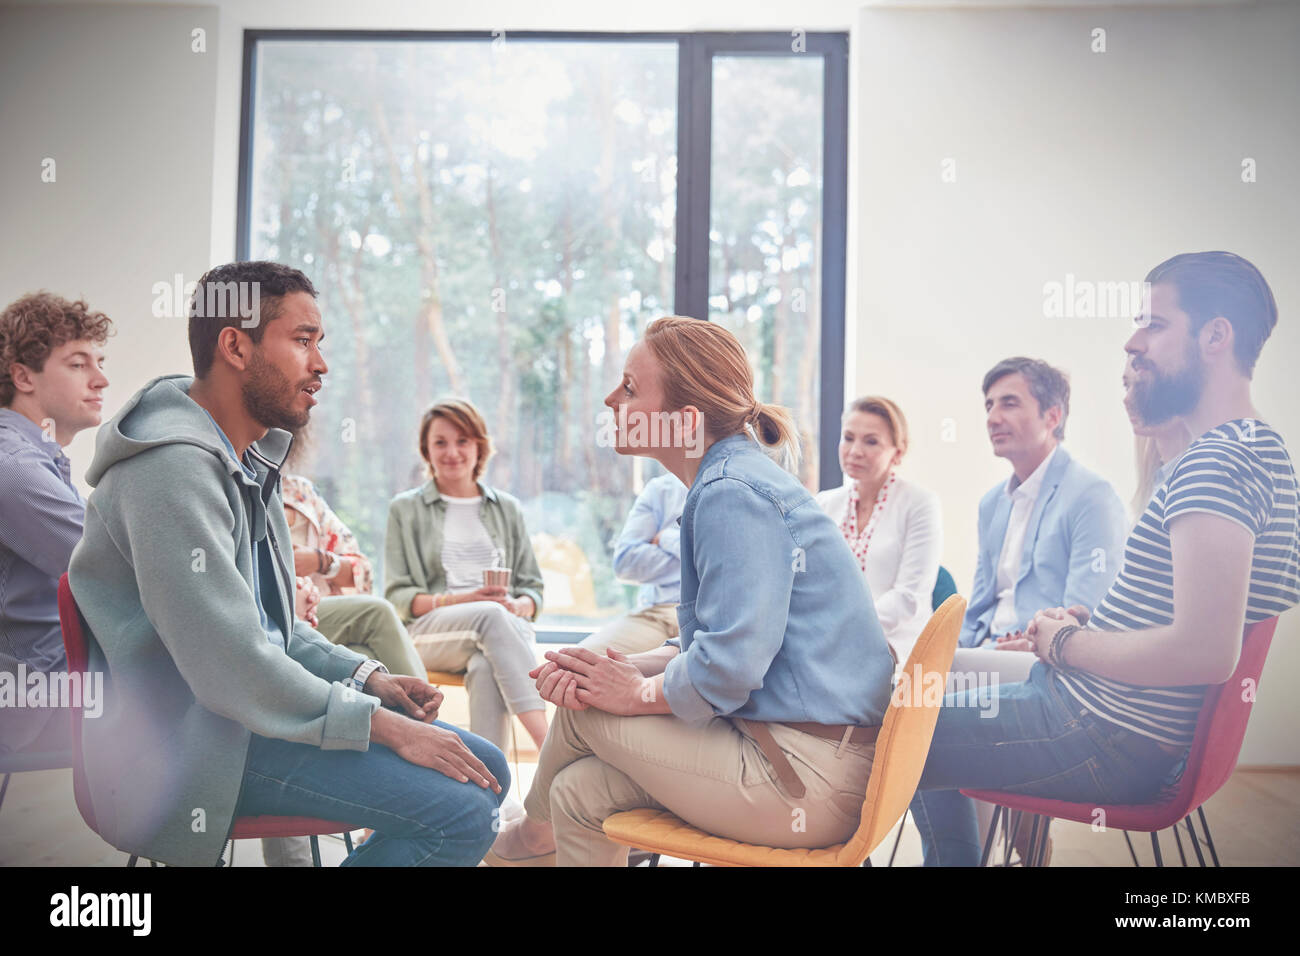 Groupe regardant homme et femme parlant face à face dans la séance de thérapie de groupe Banque D'Images